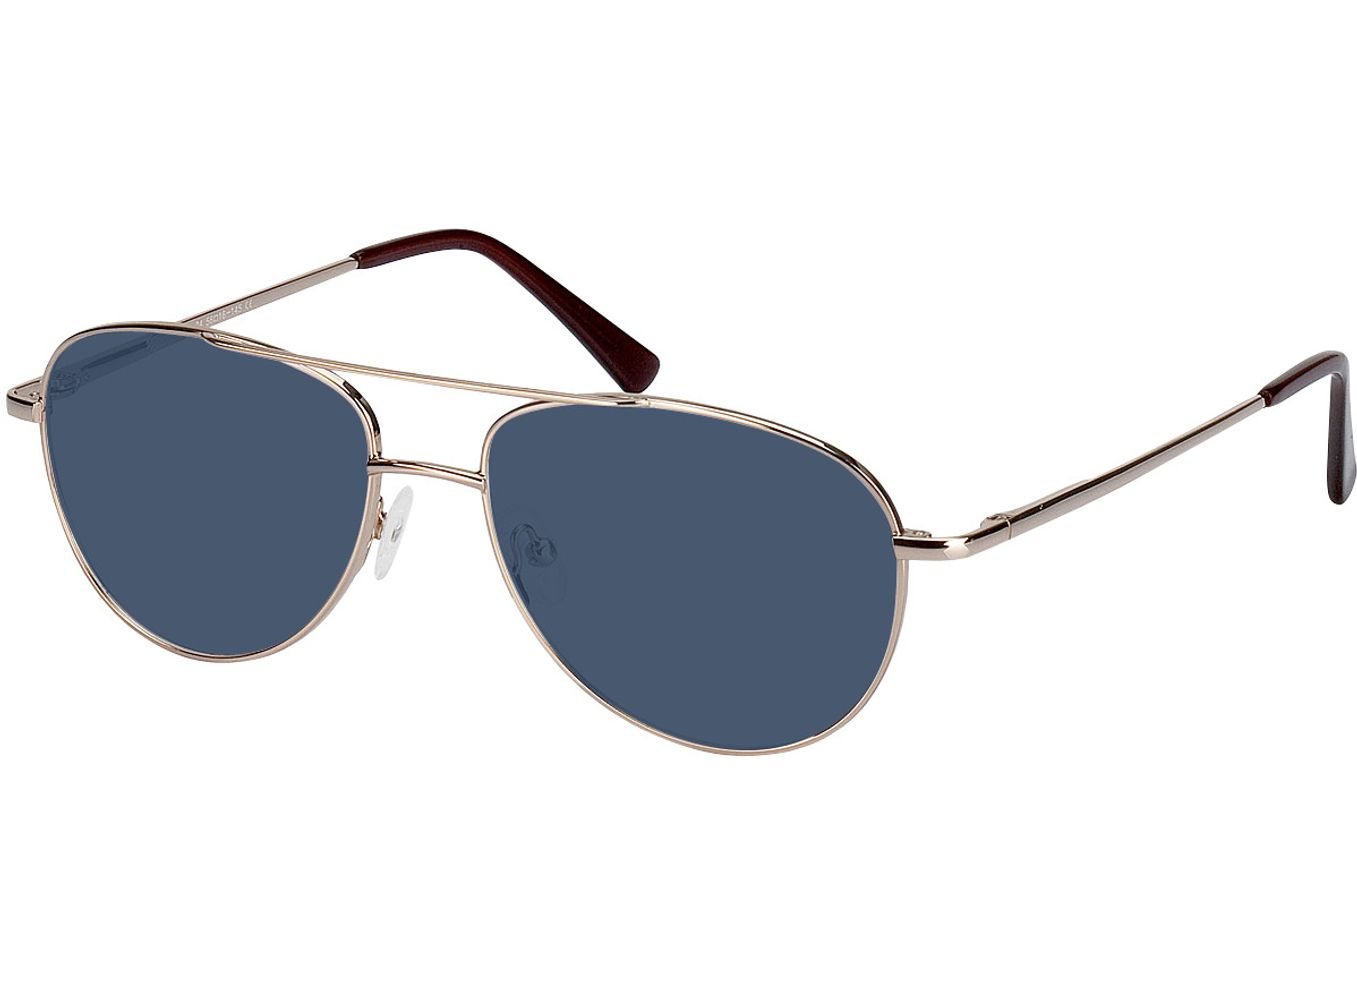 Glendale - gold Sonnenbrille ohne Sehstärke, Vollrand, Pilot von Brille24 Collection